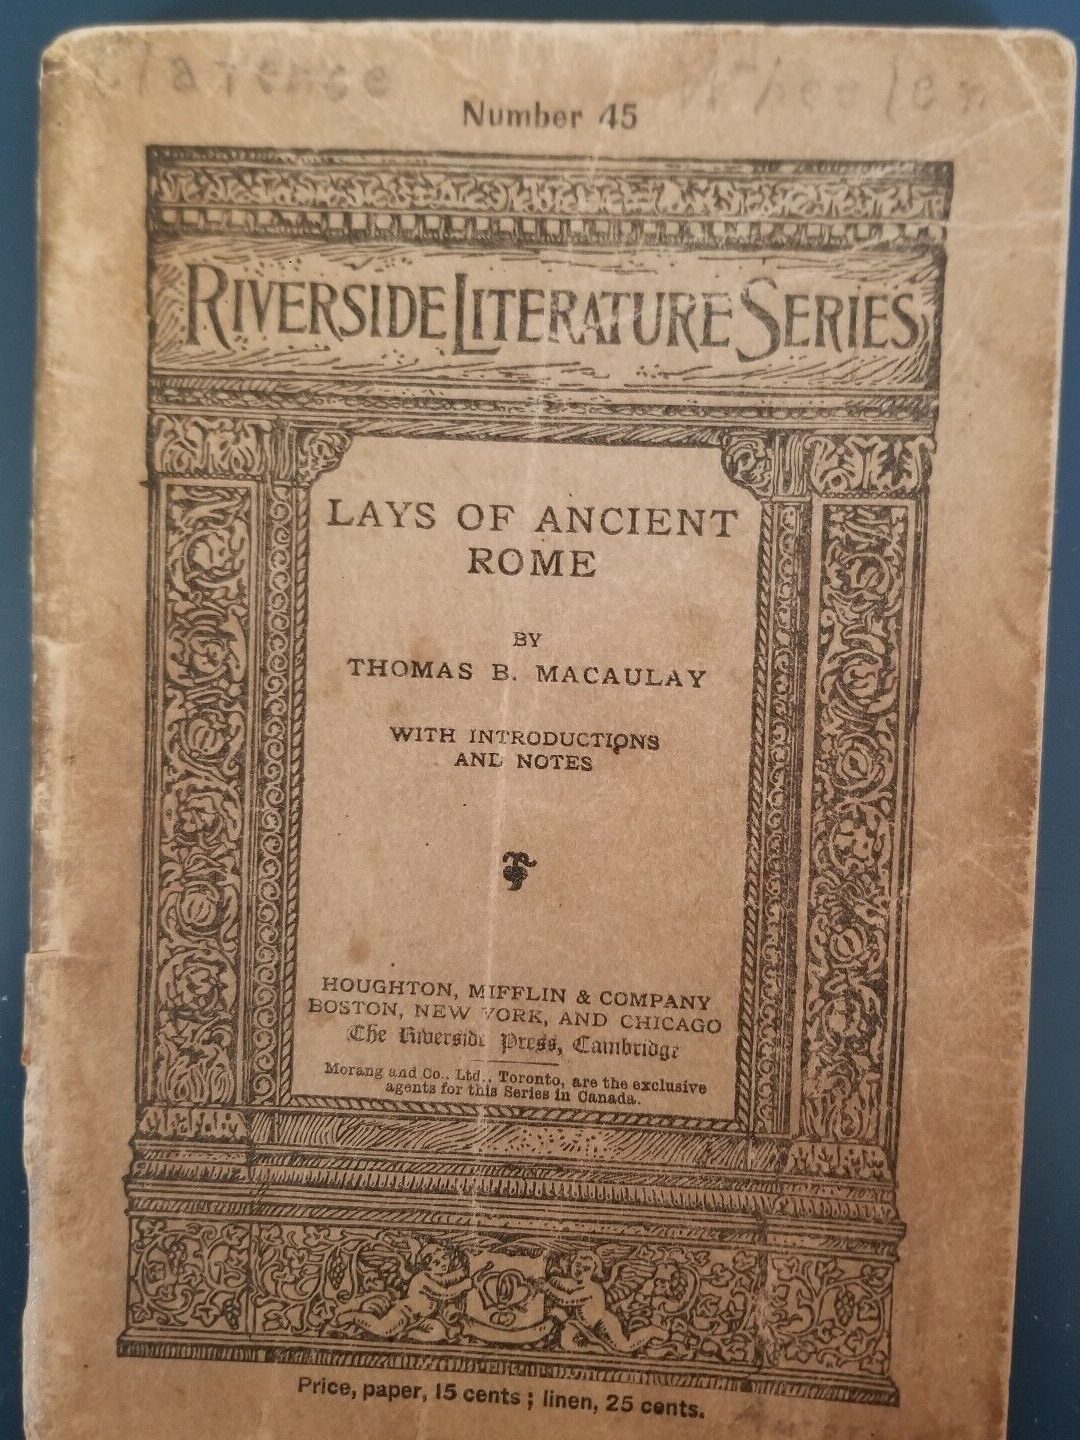 Lays of Ancient Rome - Serie Riverside Lit número 45 - 1890. El vendedor paga el envío.